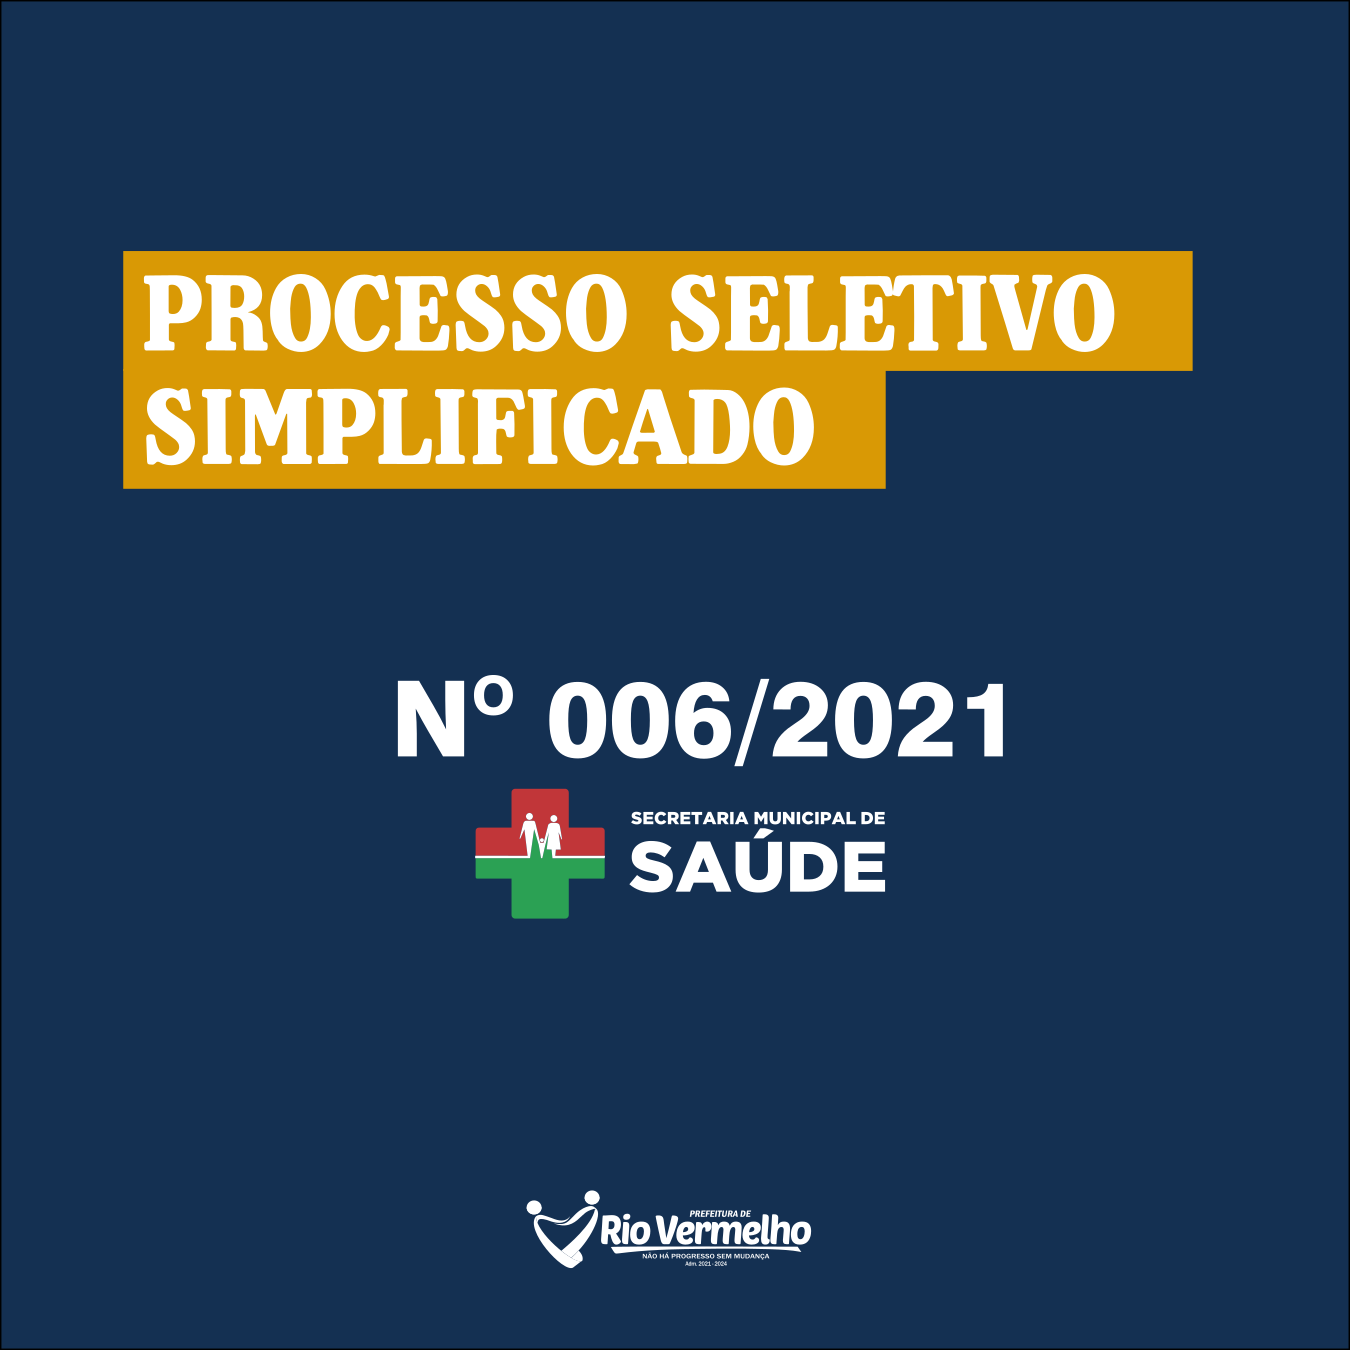 You are currently viewing EDITAL DE PROCESSO SELETIVO SIMPLIFICADO EDITAL Nº 006/2021 – SEC. MUN. DE SAÚDE